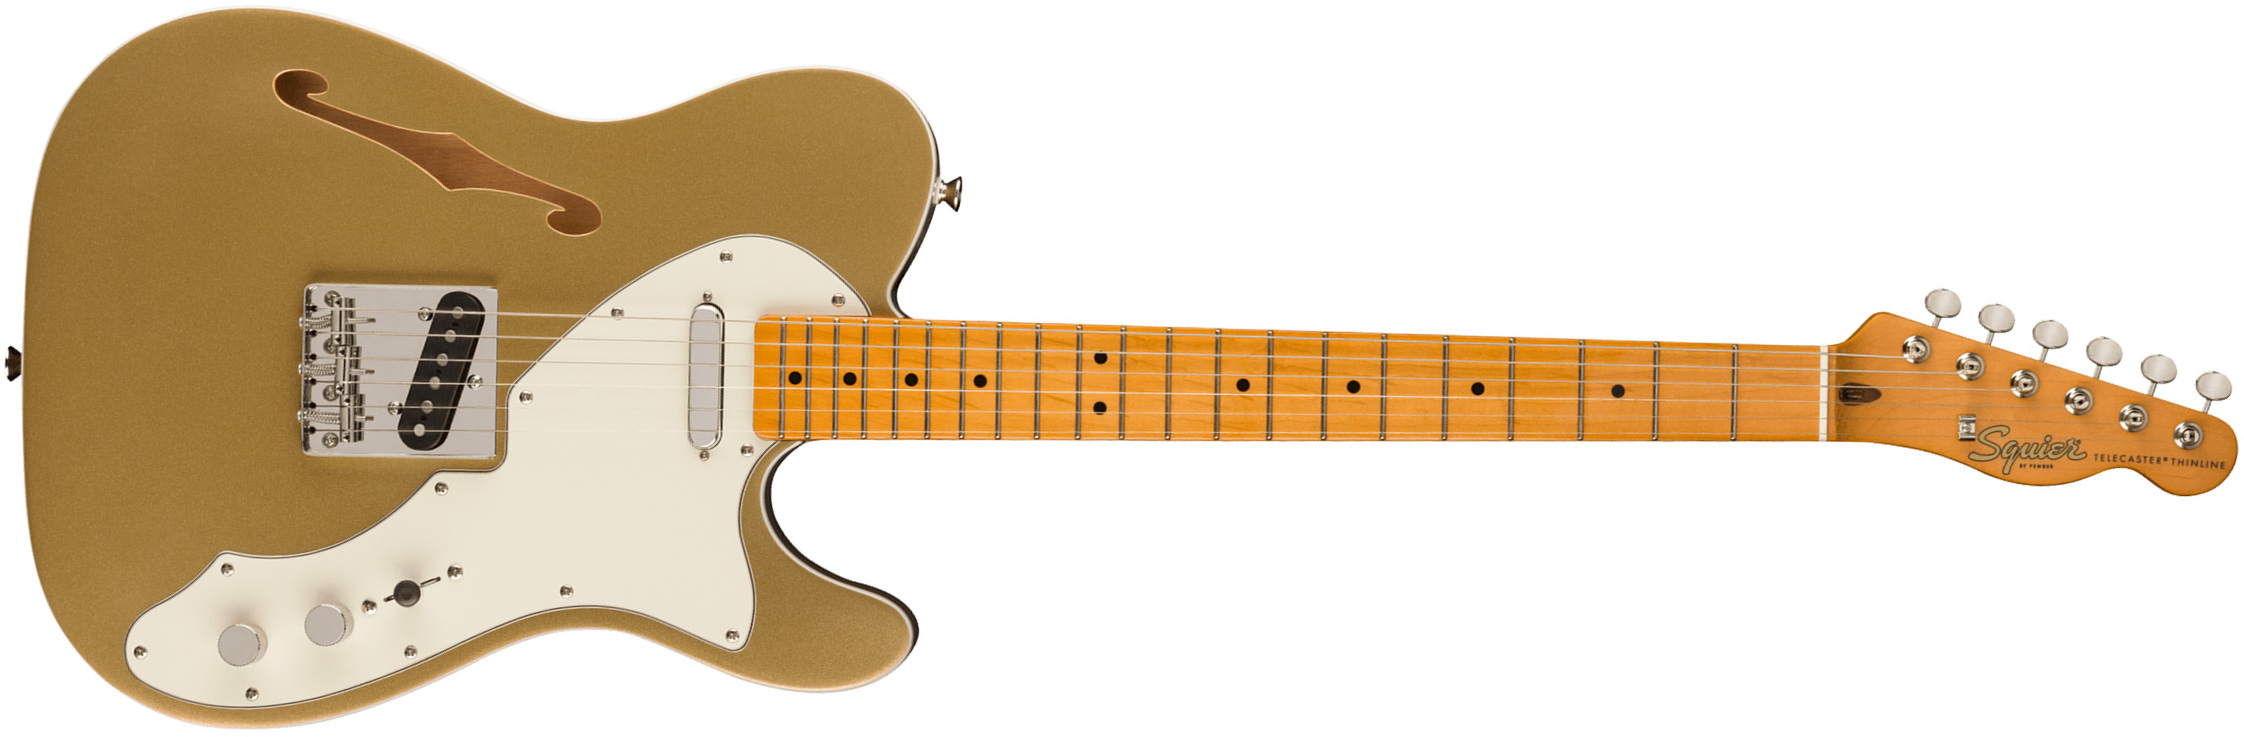 Squier Tele '60s Thinline Parchment Pickguard Classic Vibe Fsr 2s Ht Mn - Aztec Gold - Televorm elektrische gitaar - Main picture